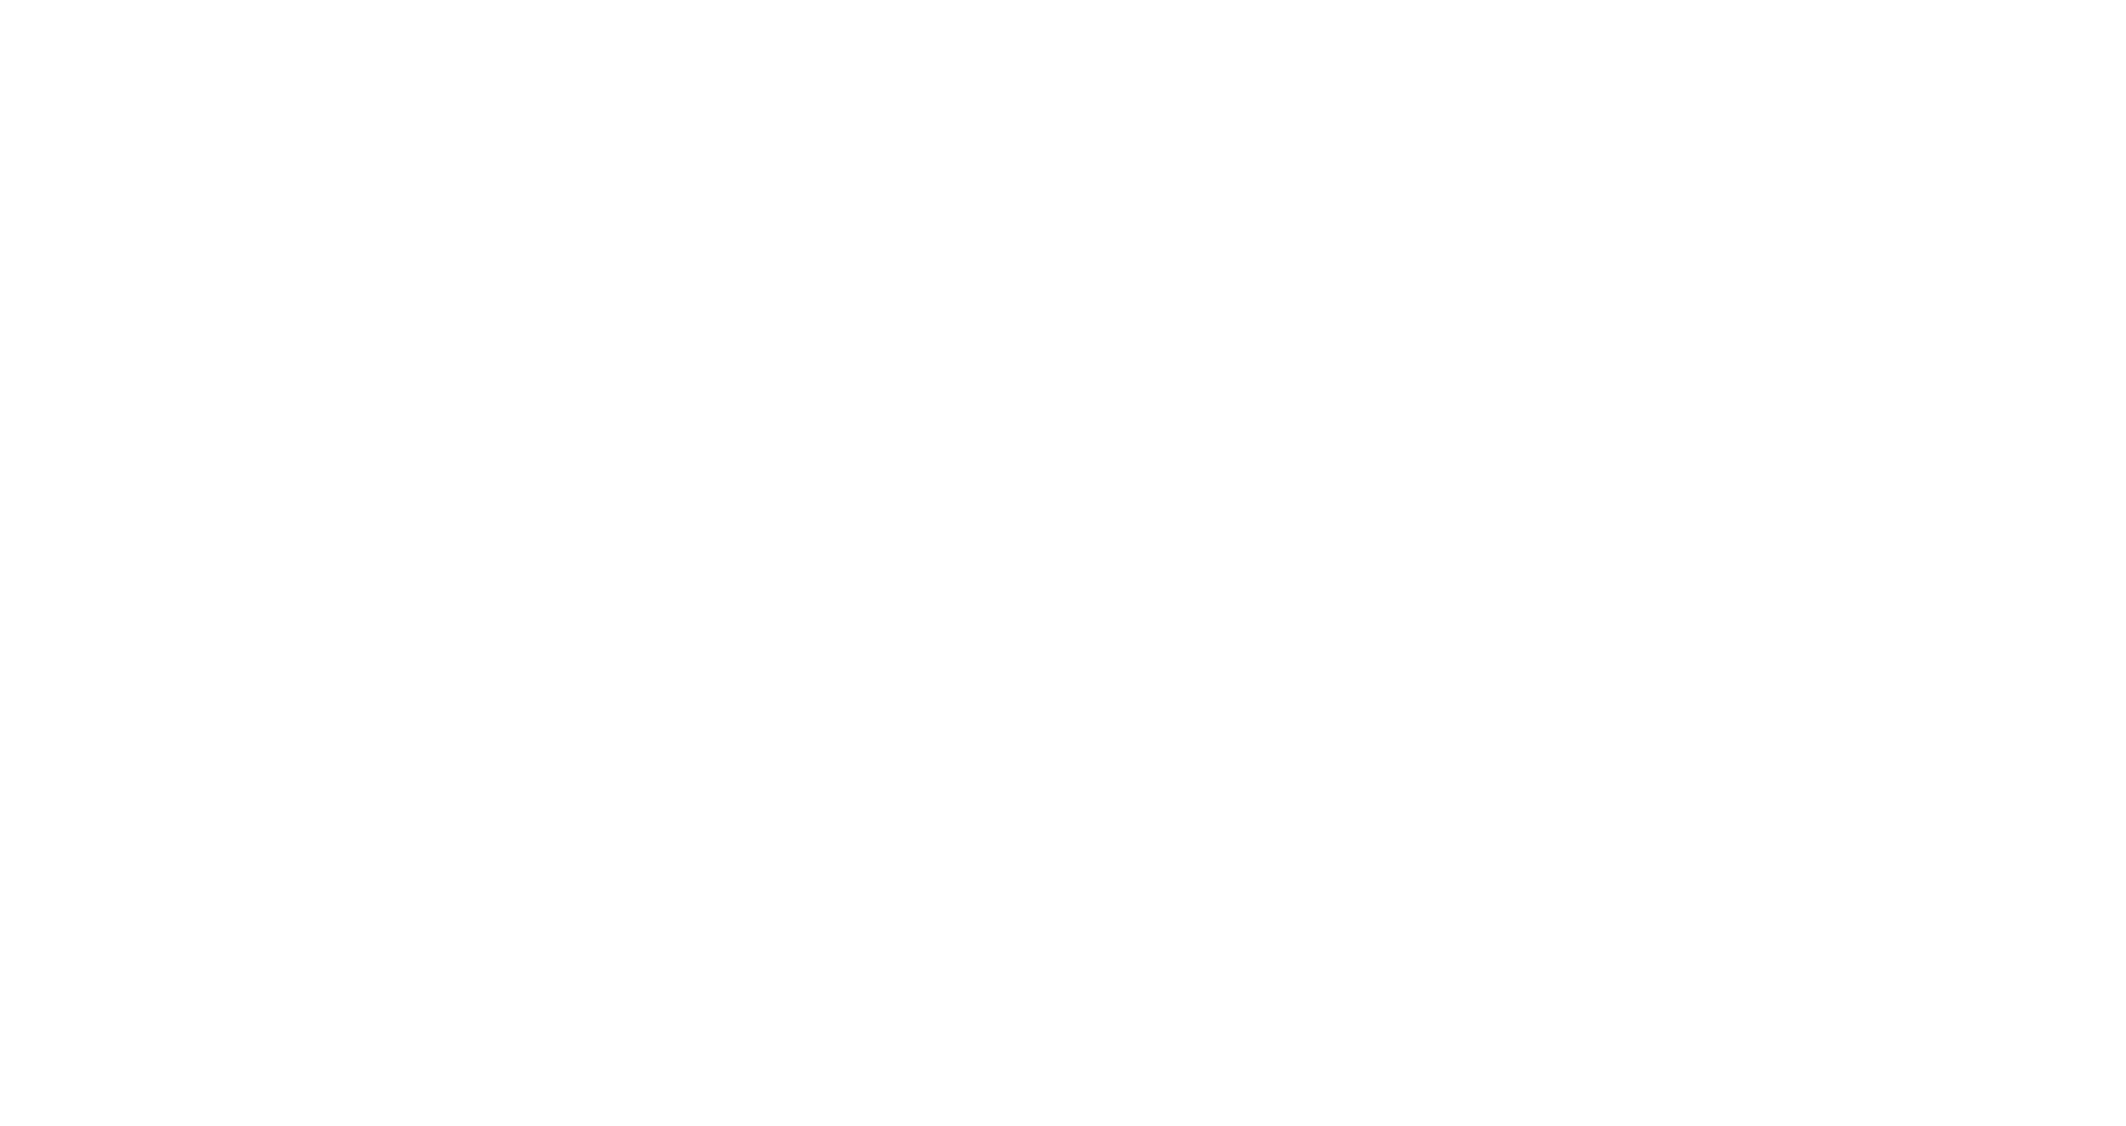 HighJump - Battery Ventures